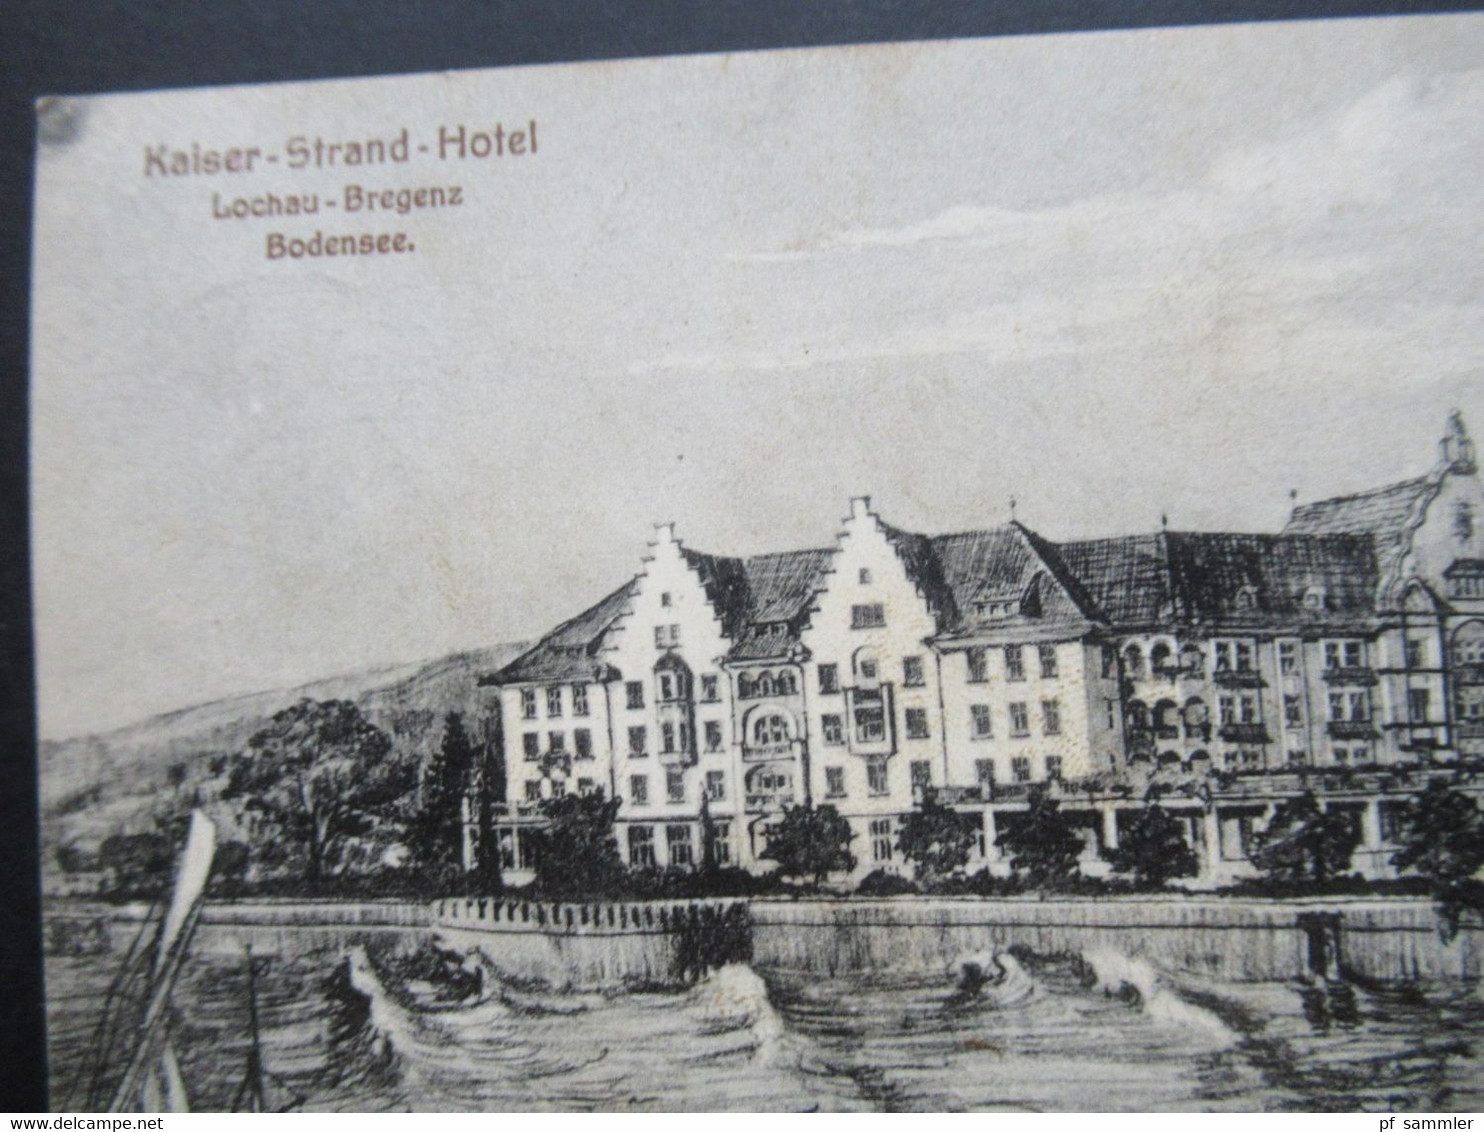 Österreich 1909 AK Kaiser Strand Hotel In Lochau Bregenz Am Bodensee. Strandhotel Mit Promenade - Hotels & Restaurants